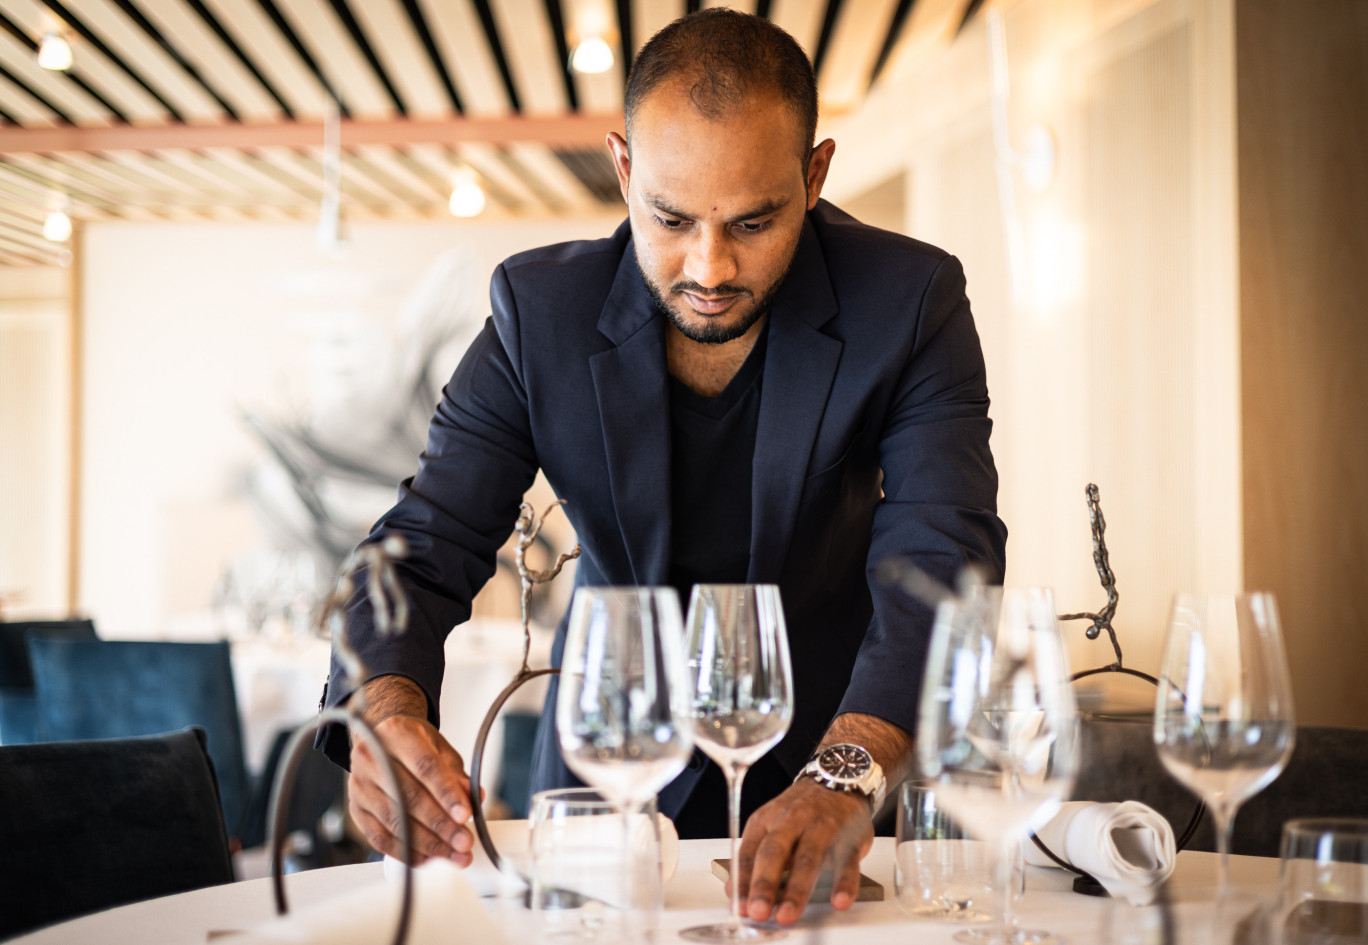 Sadik Muhaimin, chef de rang au restaurant l’Amaryllis, s’est donné les moyens d’atteindre ses objectifs professionnels et continue à voir plus loin. (© L’Amaryllis)